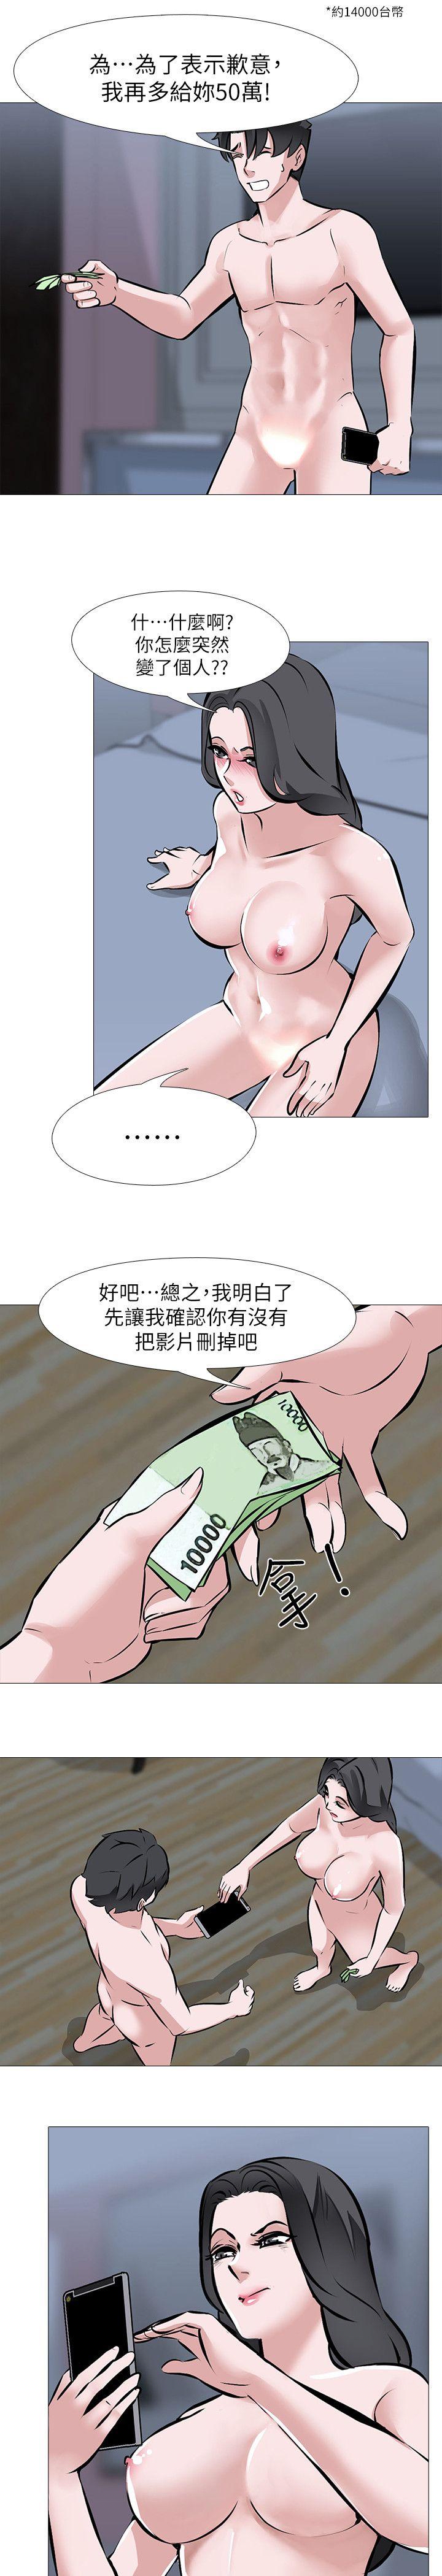 韩国污漫画 虐妻遊戲 第3话-不放过你! 14